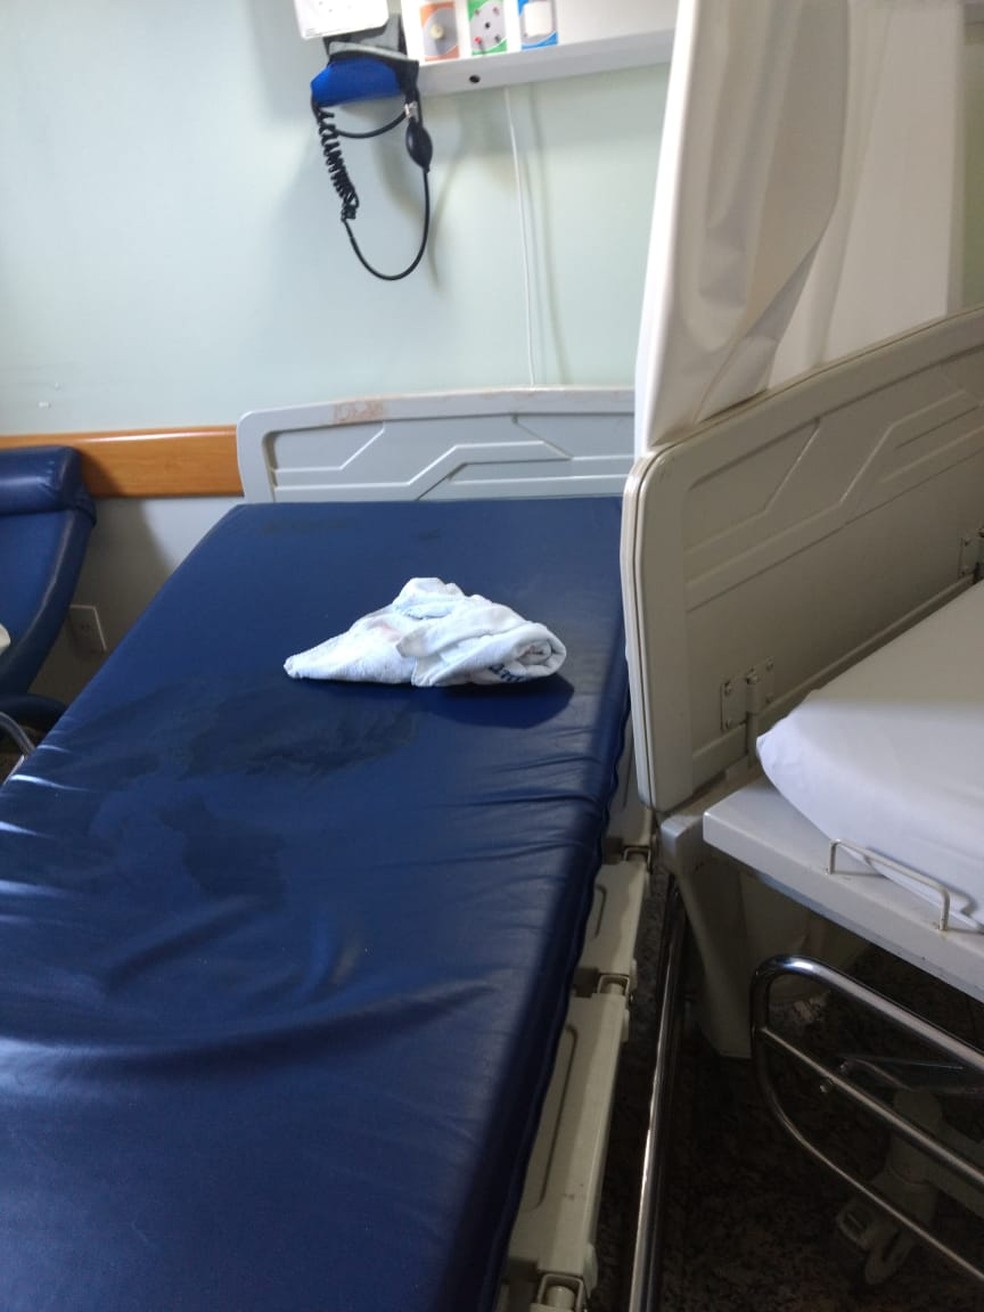 Paciente estava em uma cama do hospital (Foto: Arquivo pessoal)